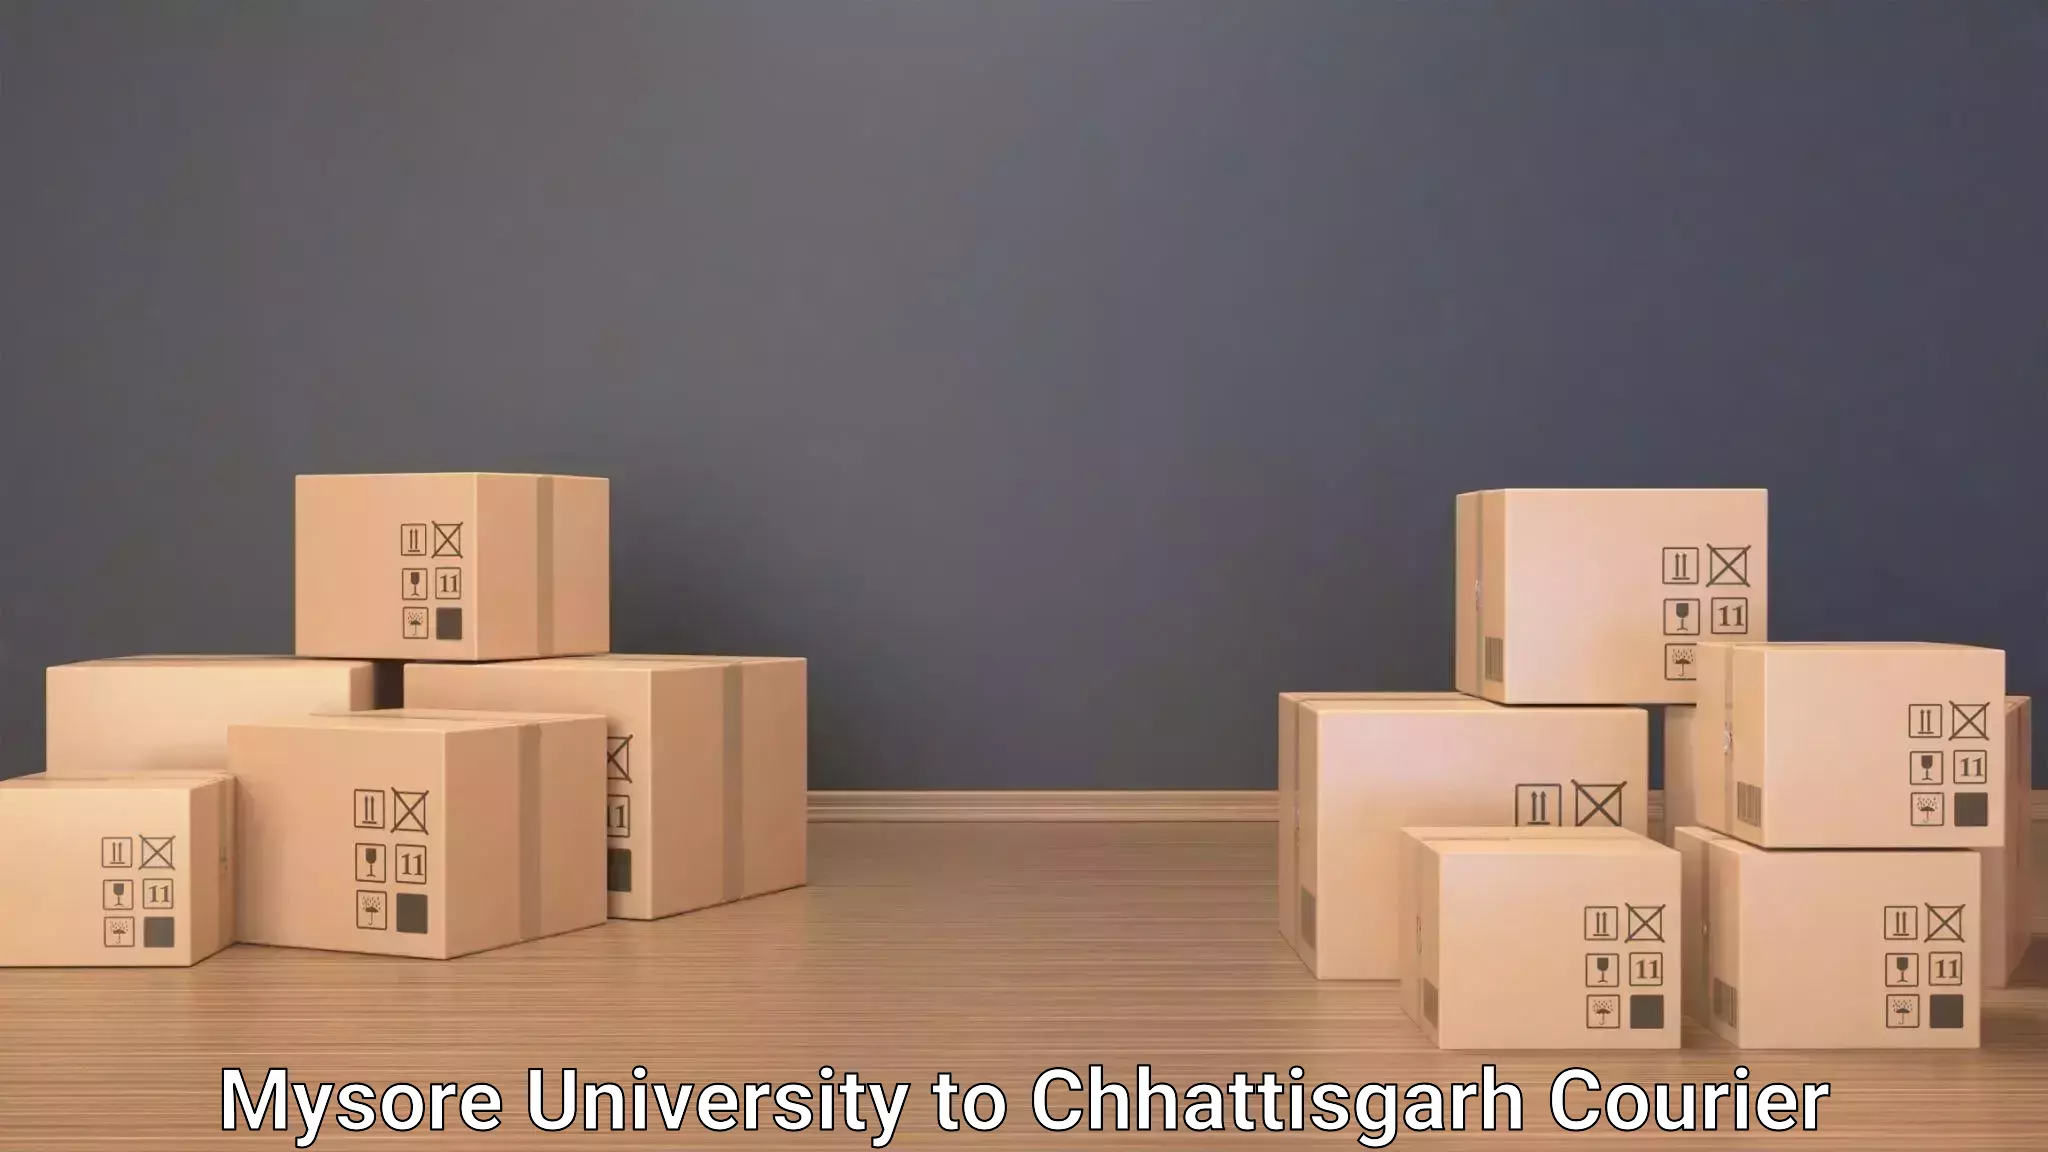 Luggage forwarding service Mysore University to Berla